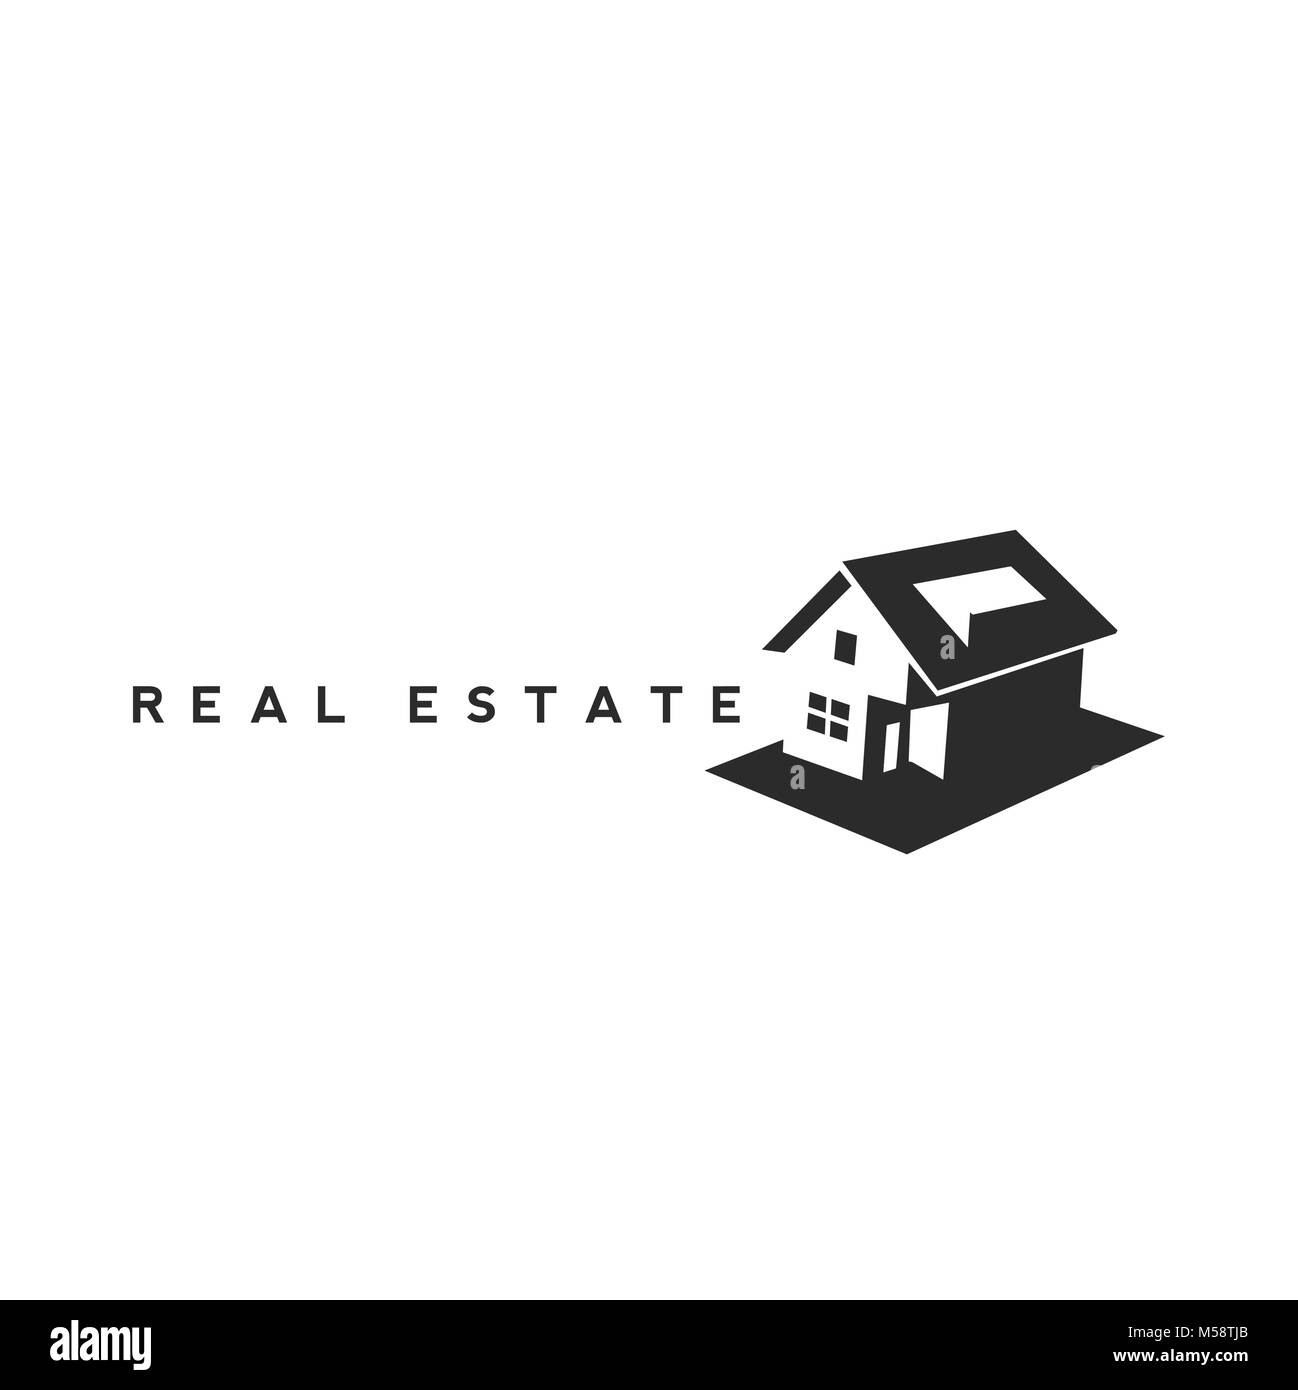 real estate house logo design. Stock Vector